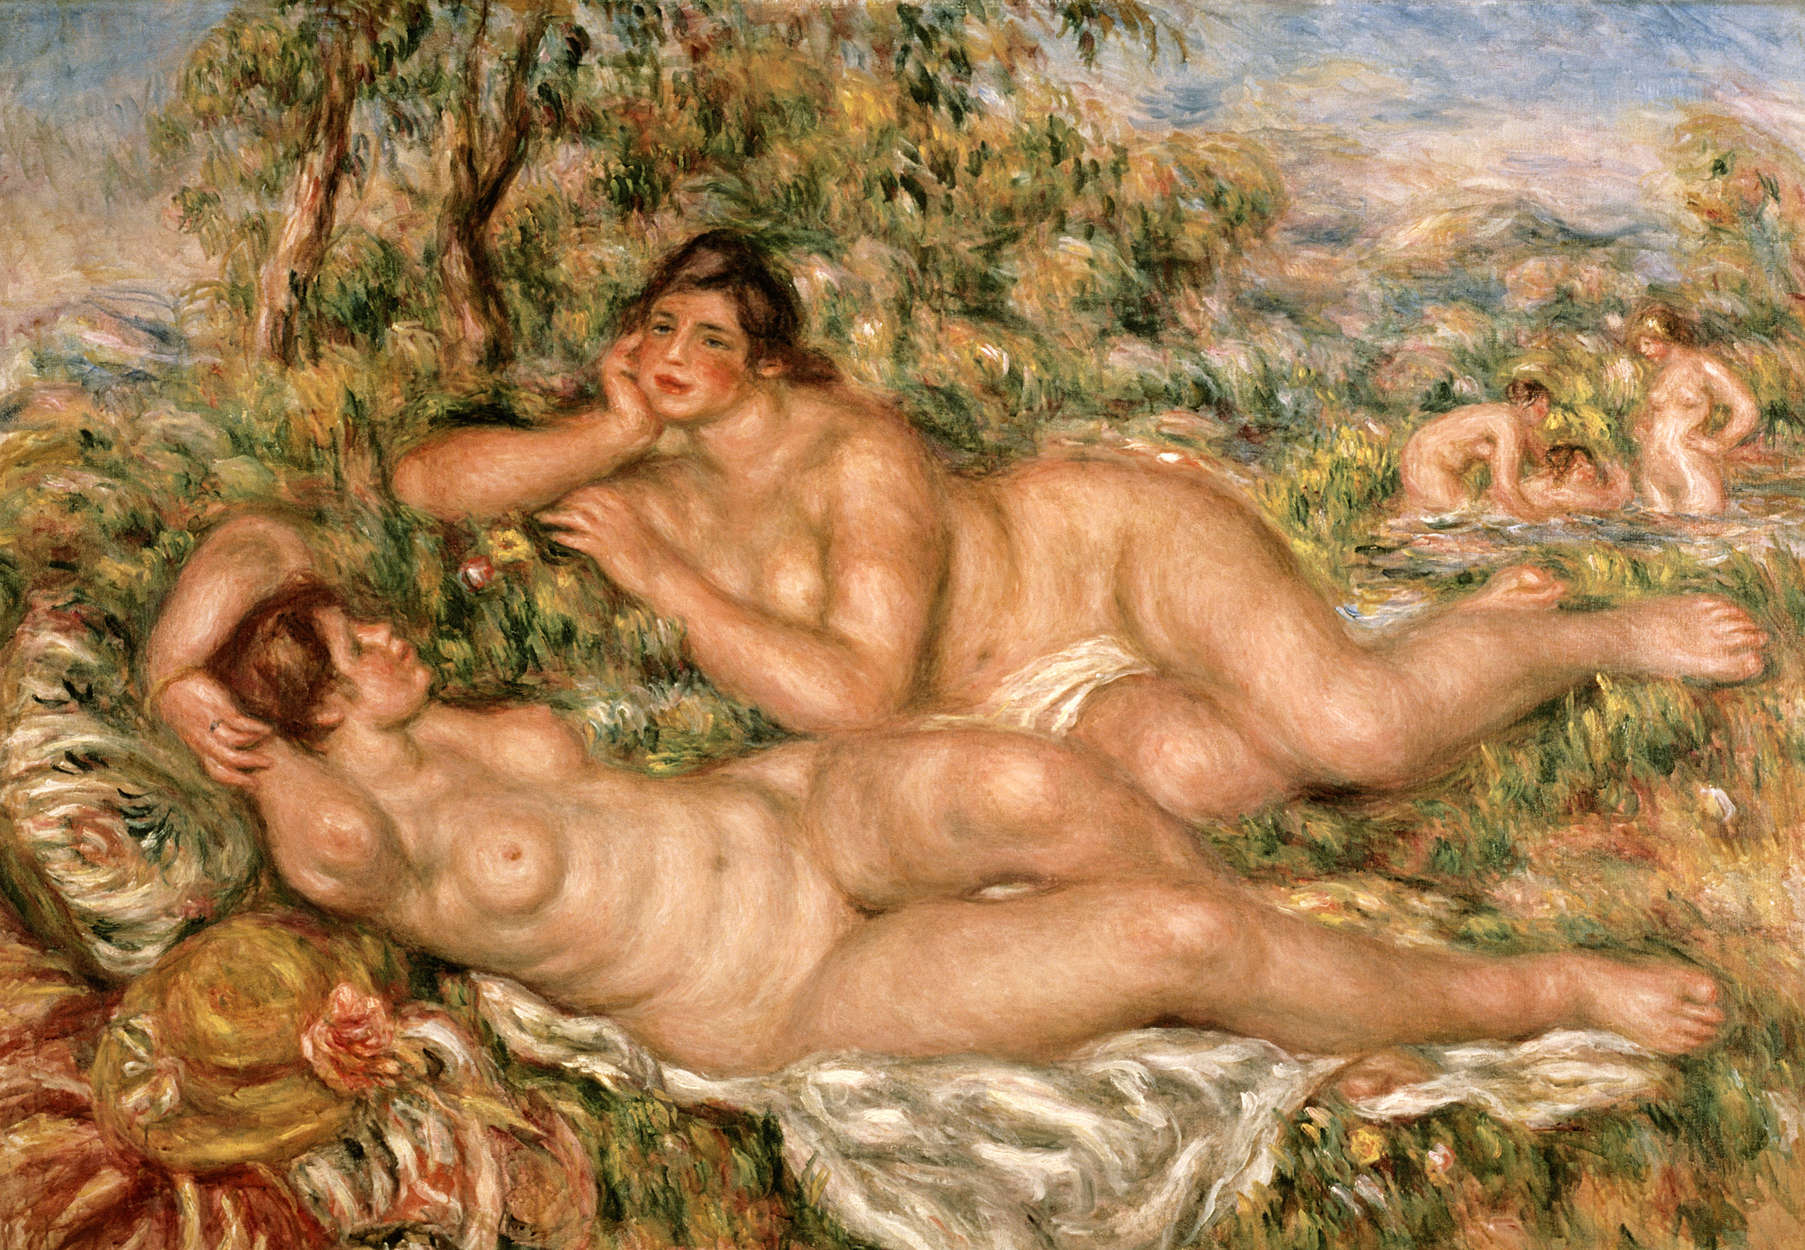             Badgasten" muurschildering van Pierre Auguste Renoir
        